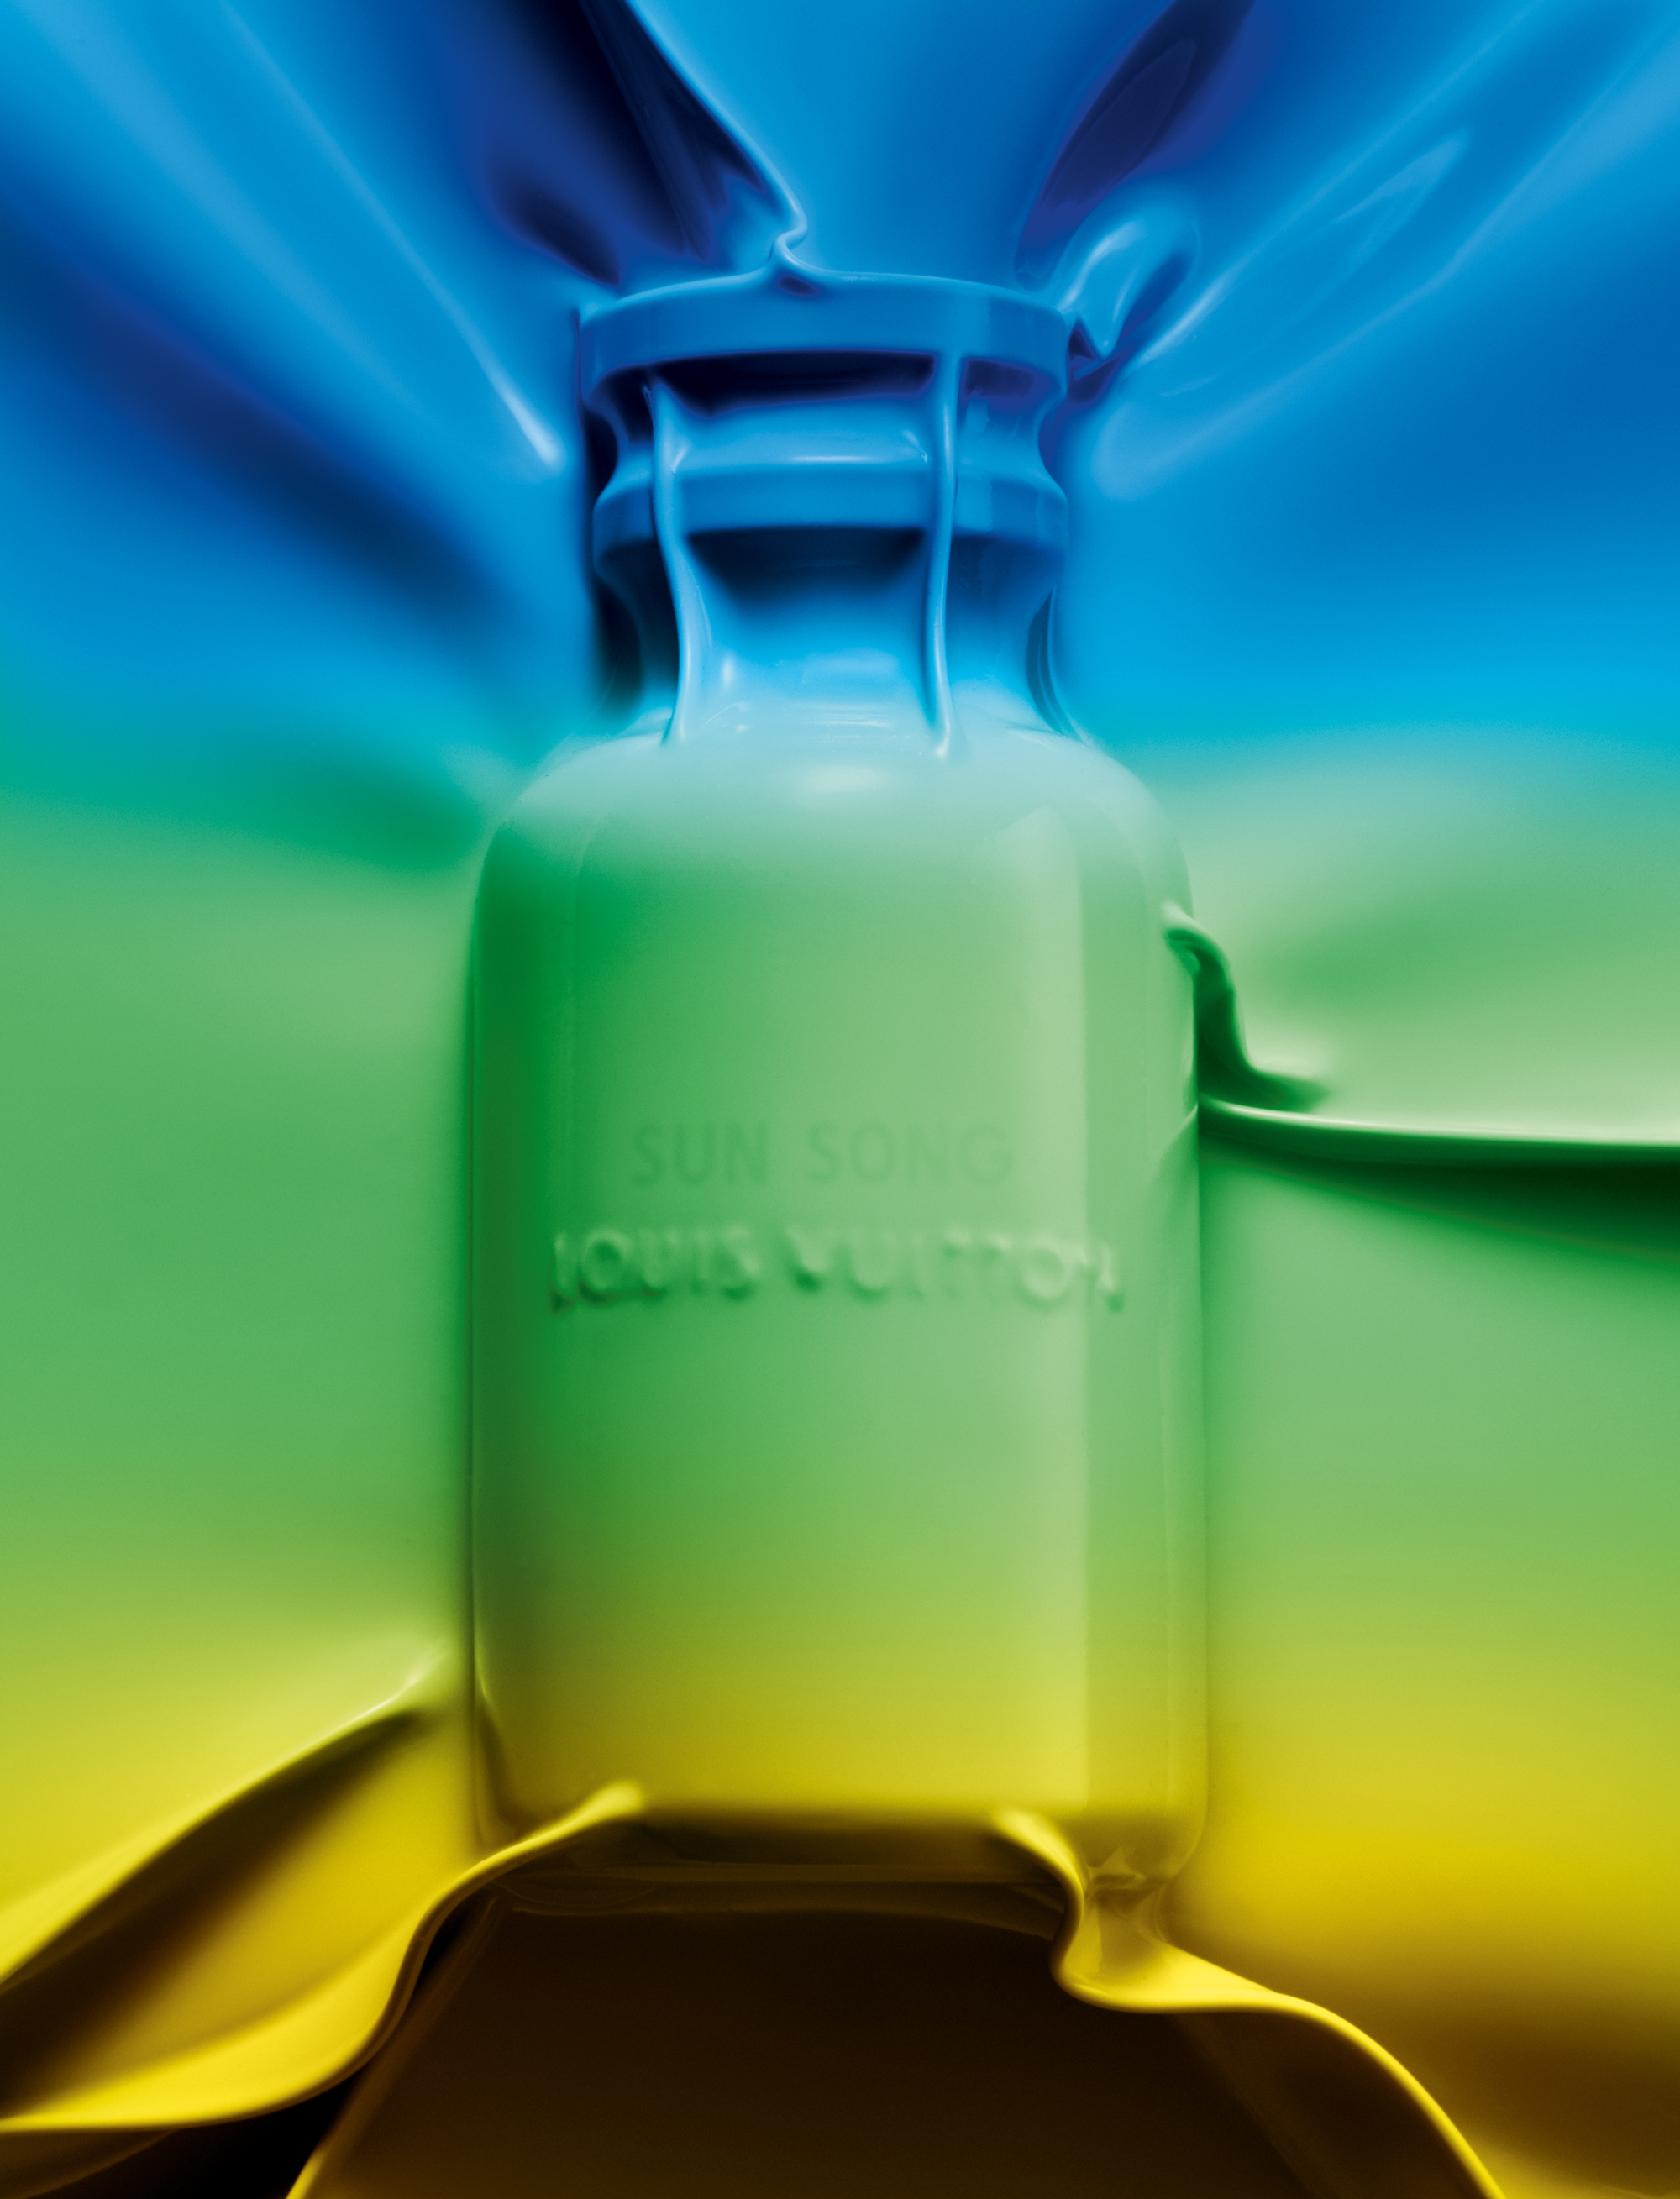 Extrait de la série “Sunset Boulevard”, le dernier parfum Louis Vuitton photographiés par ...